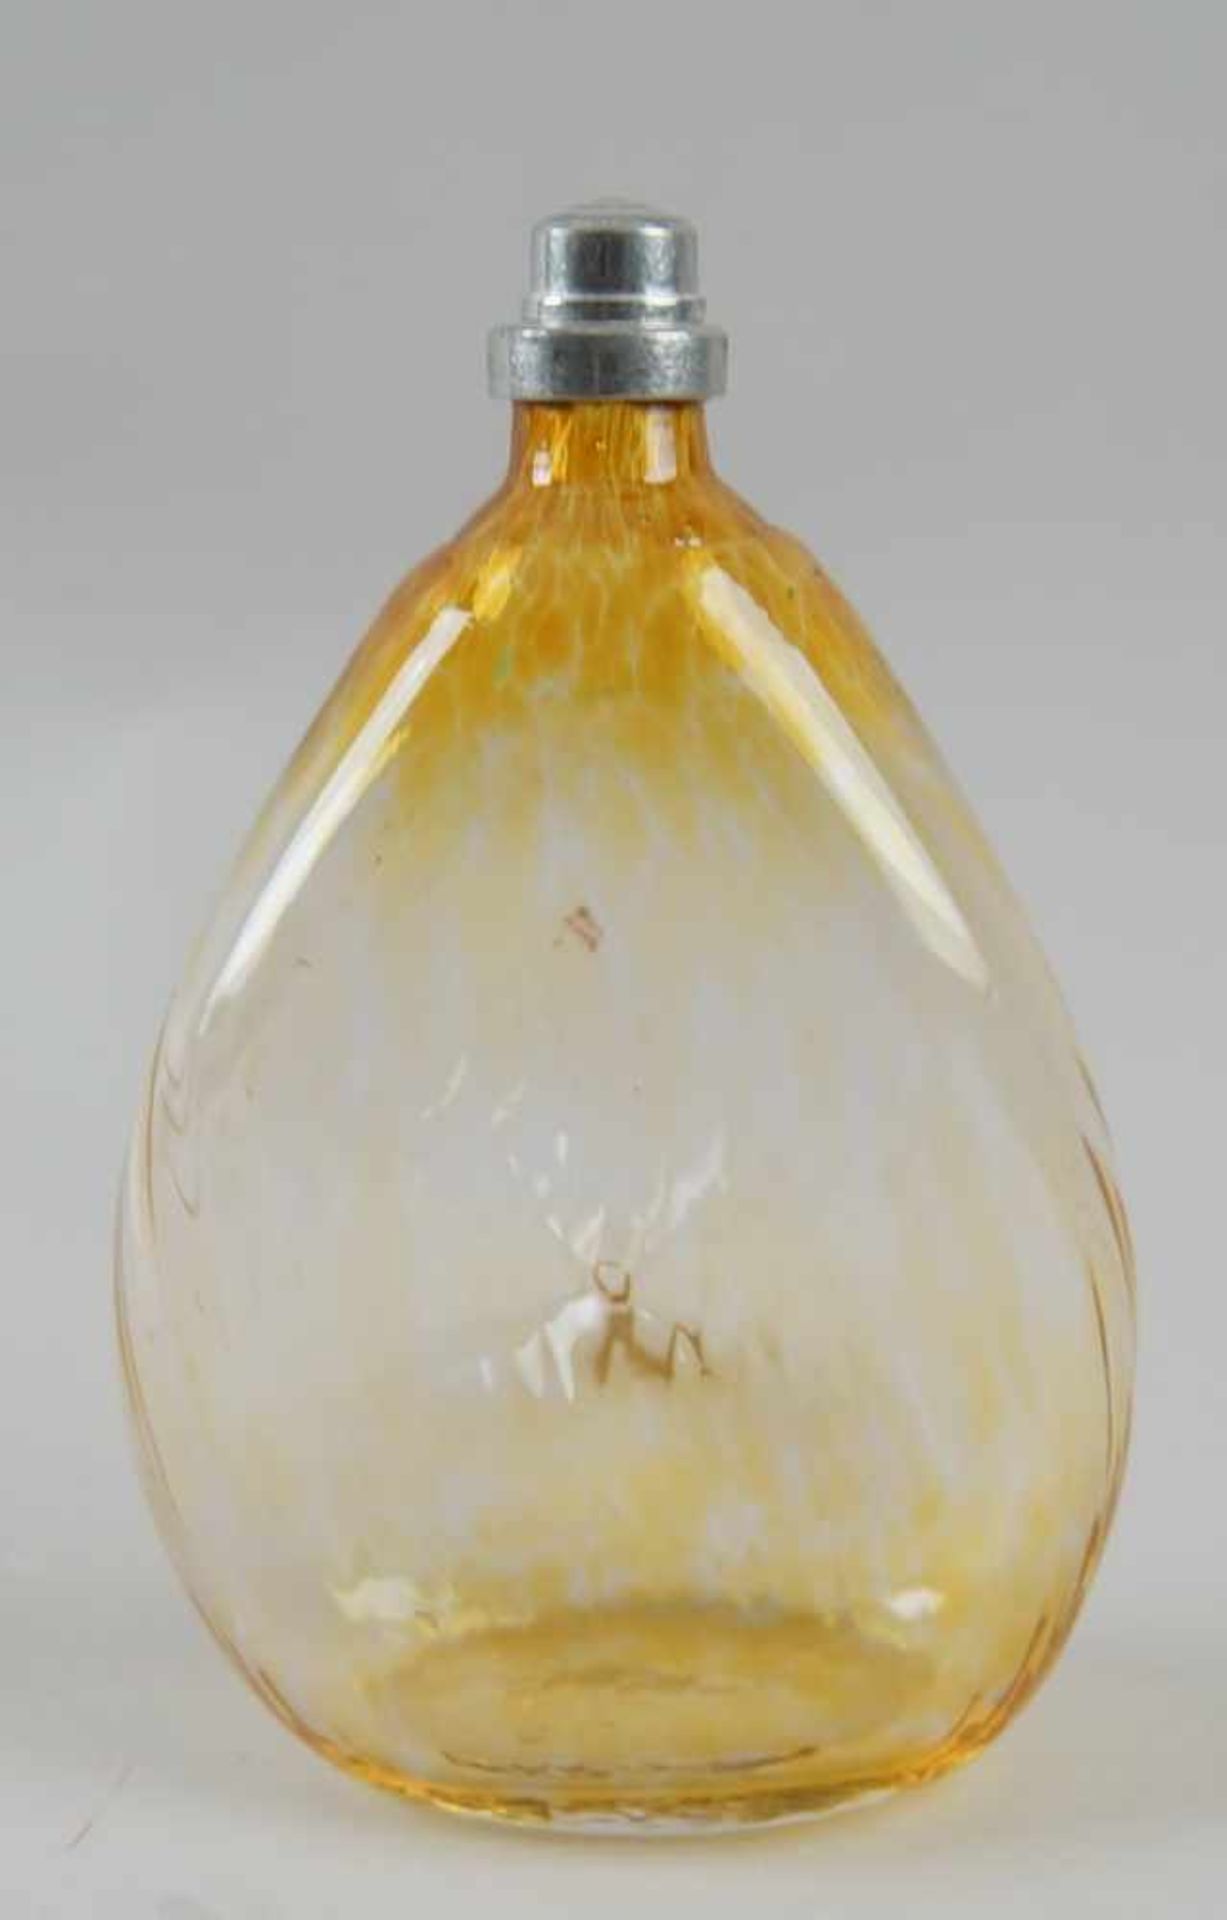 Gramsacher Nabelflasche, Tirol, ~ 1900, gelbliches Glas, H 18 cm - Bild 6 aus 7